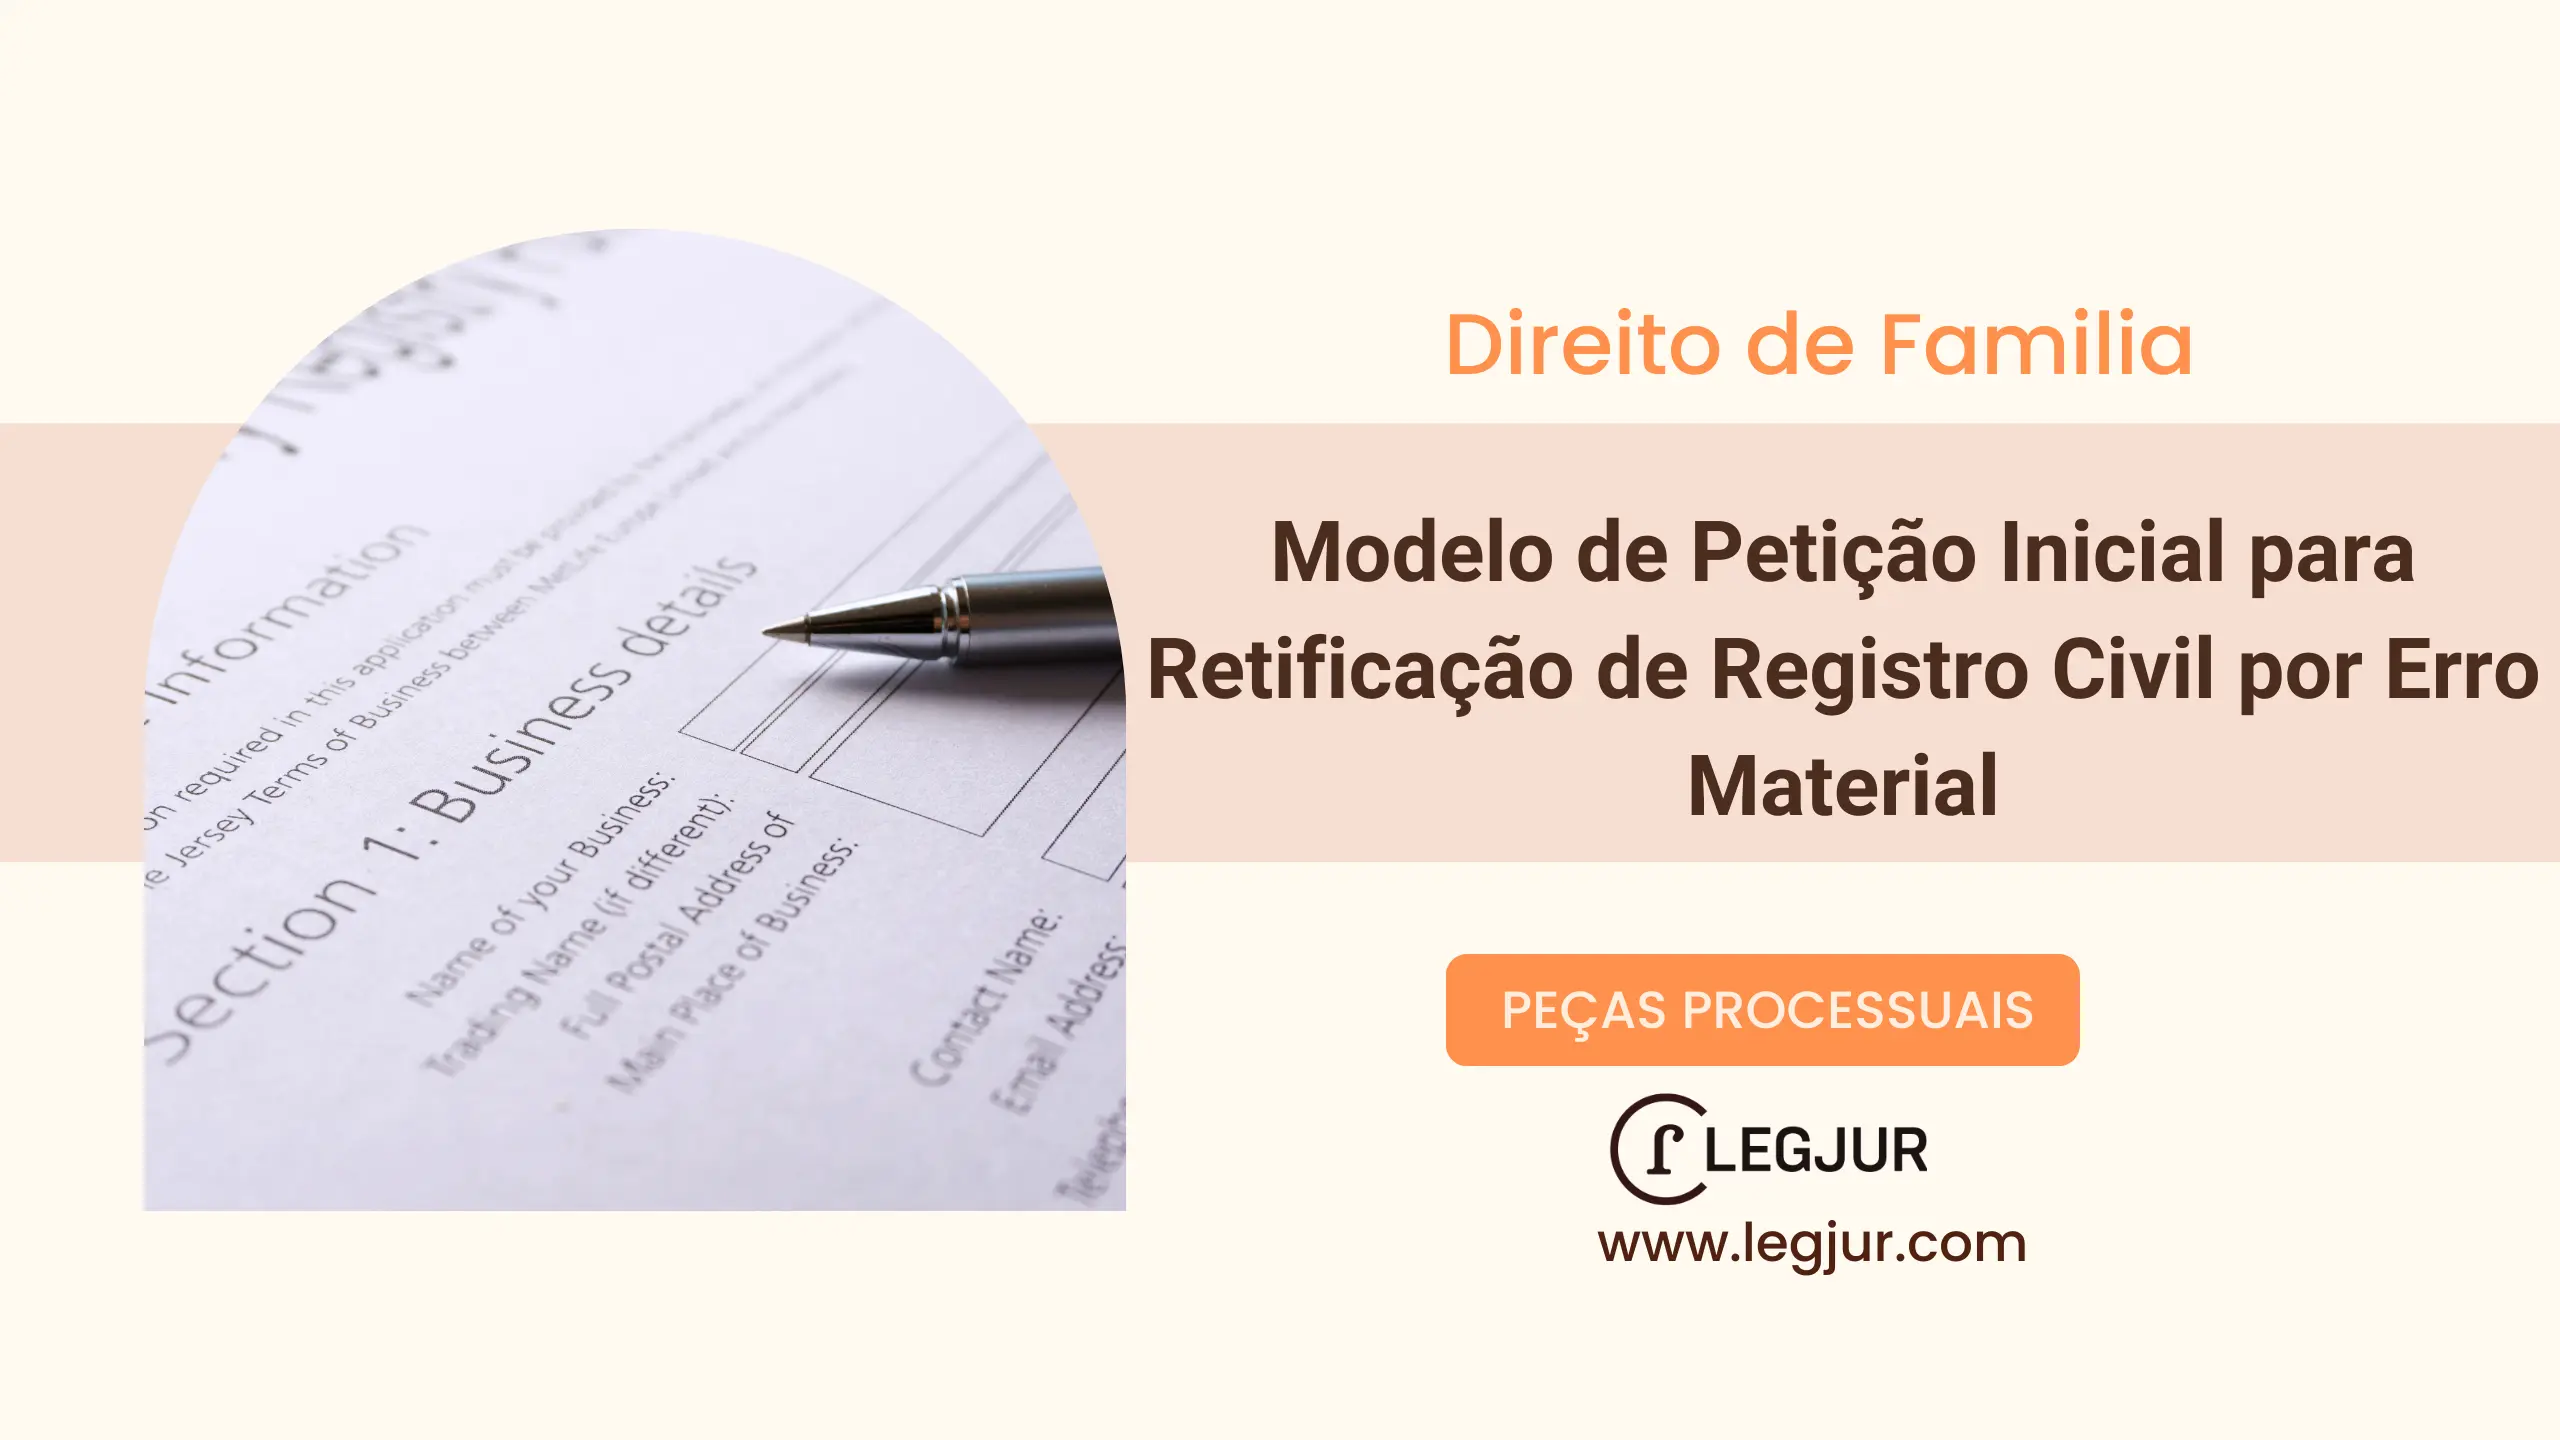 Modelo de Petição Inicial para Retificação de Registro Civil por Erro Material